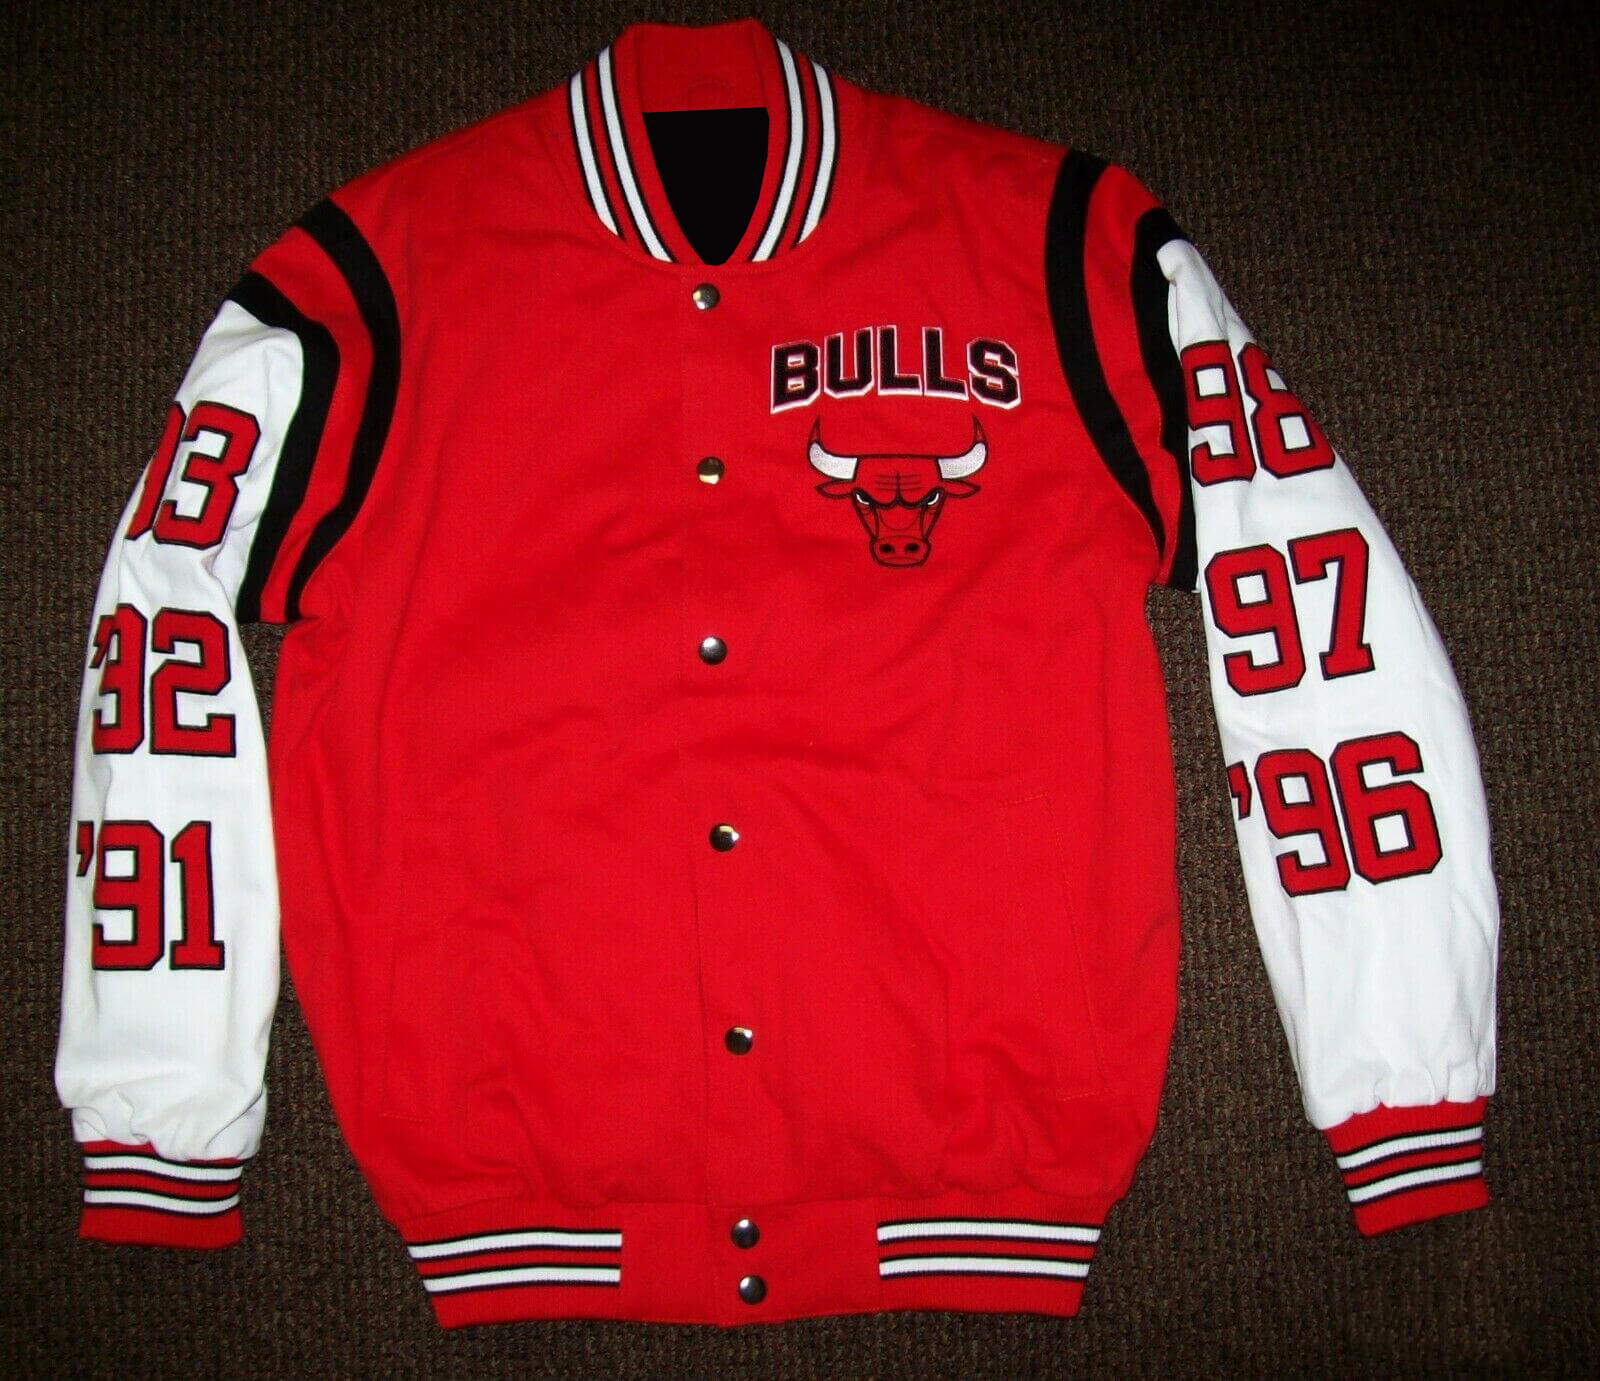 Men Chicago Bulls 6 NBA Finals Time Champions Jacket